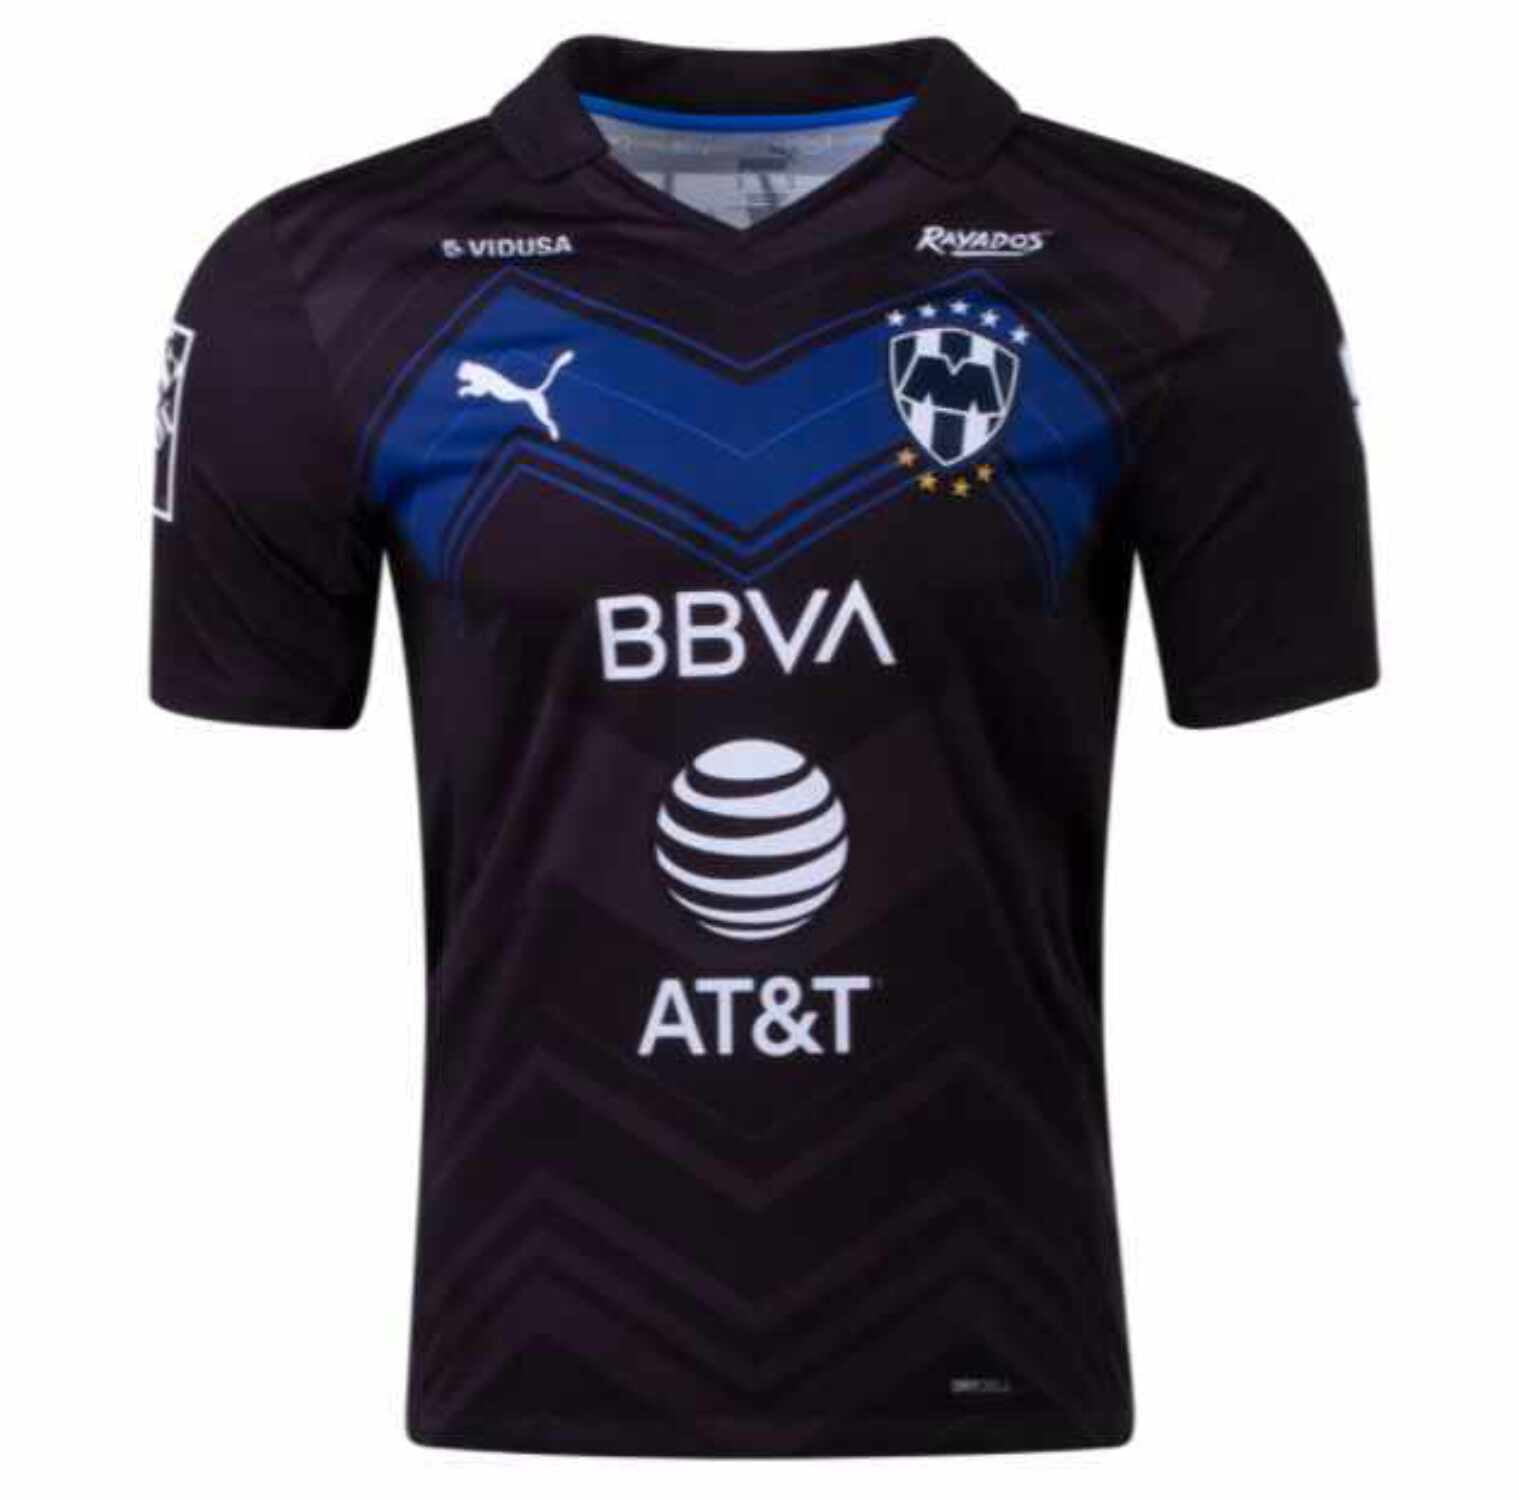 Precipicio adolescente Centro de producción Puma C.F. Monterrey 2020 - 21 Third Soccer Jersey - Black M - Walmart.com